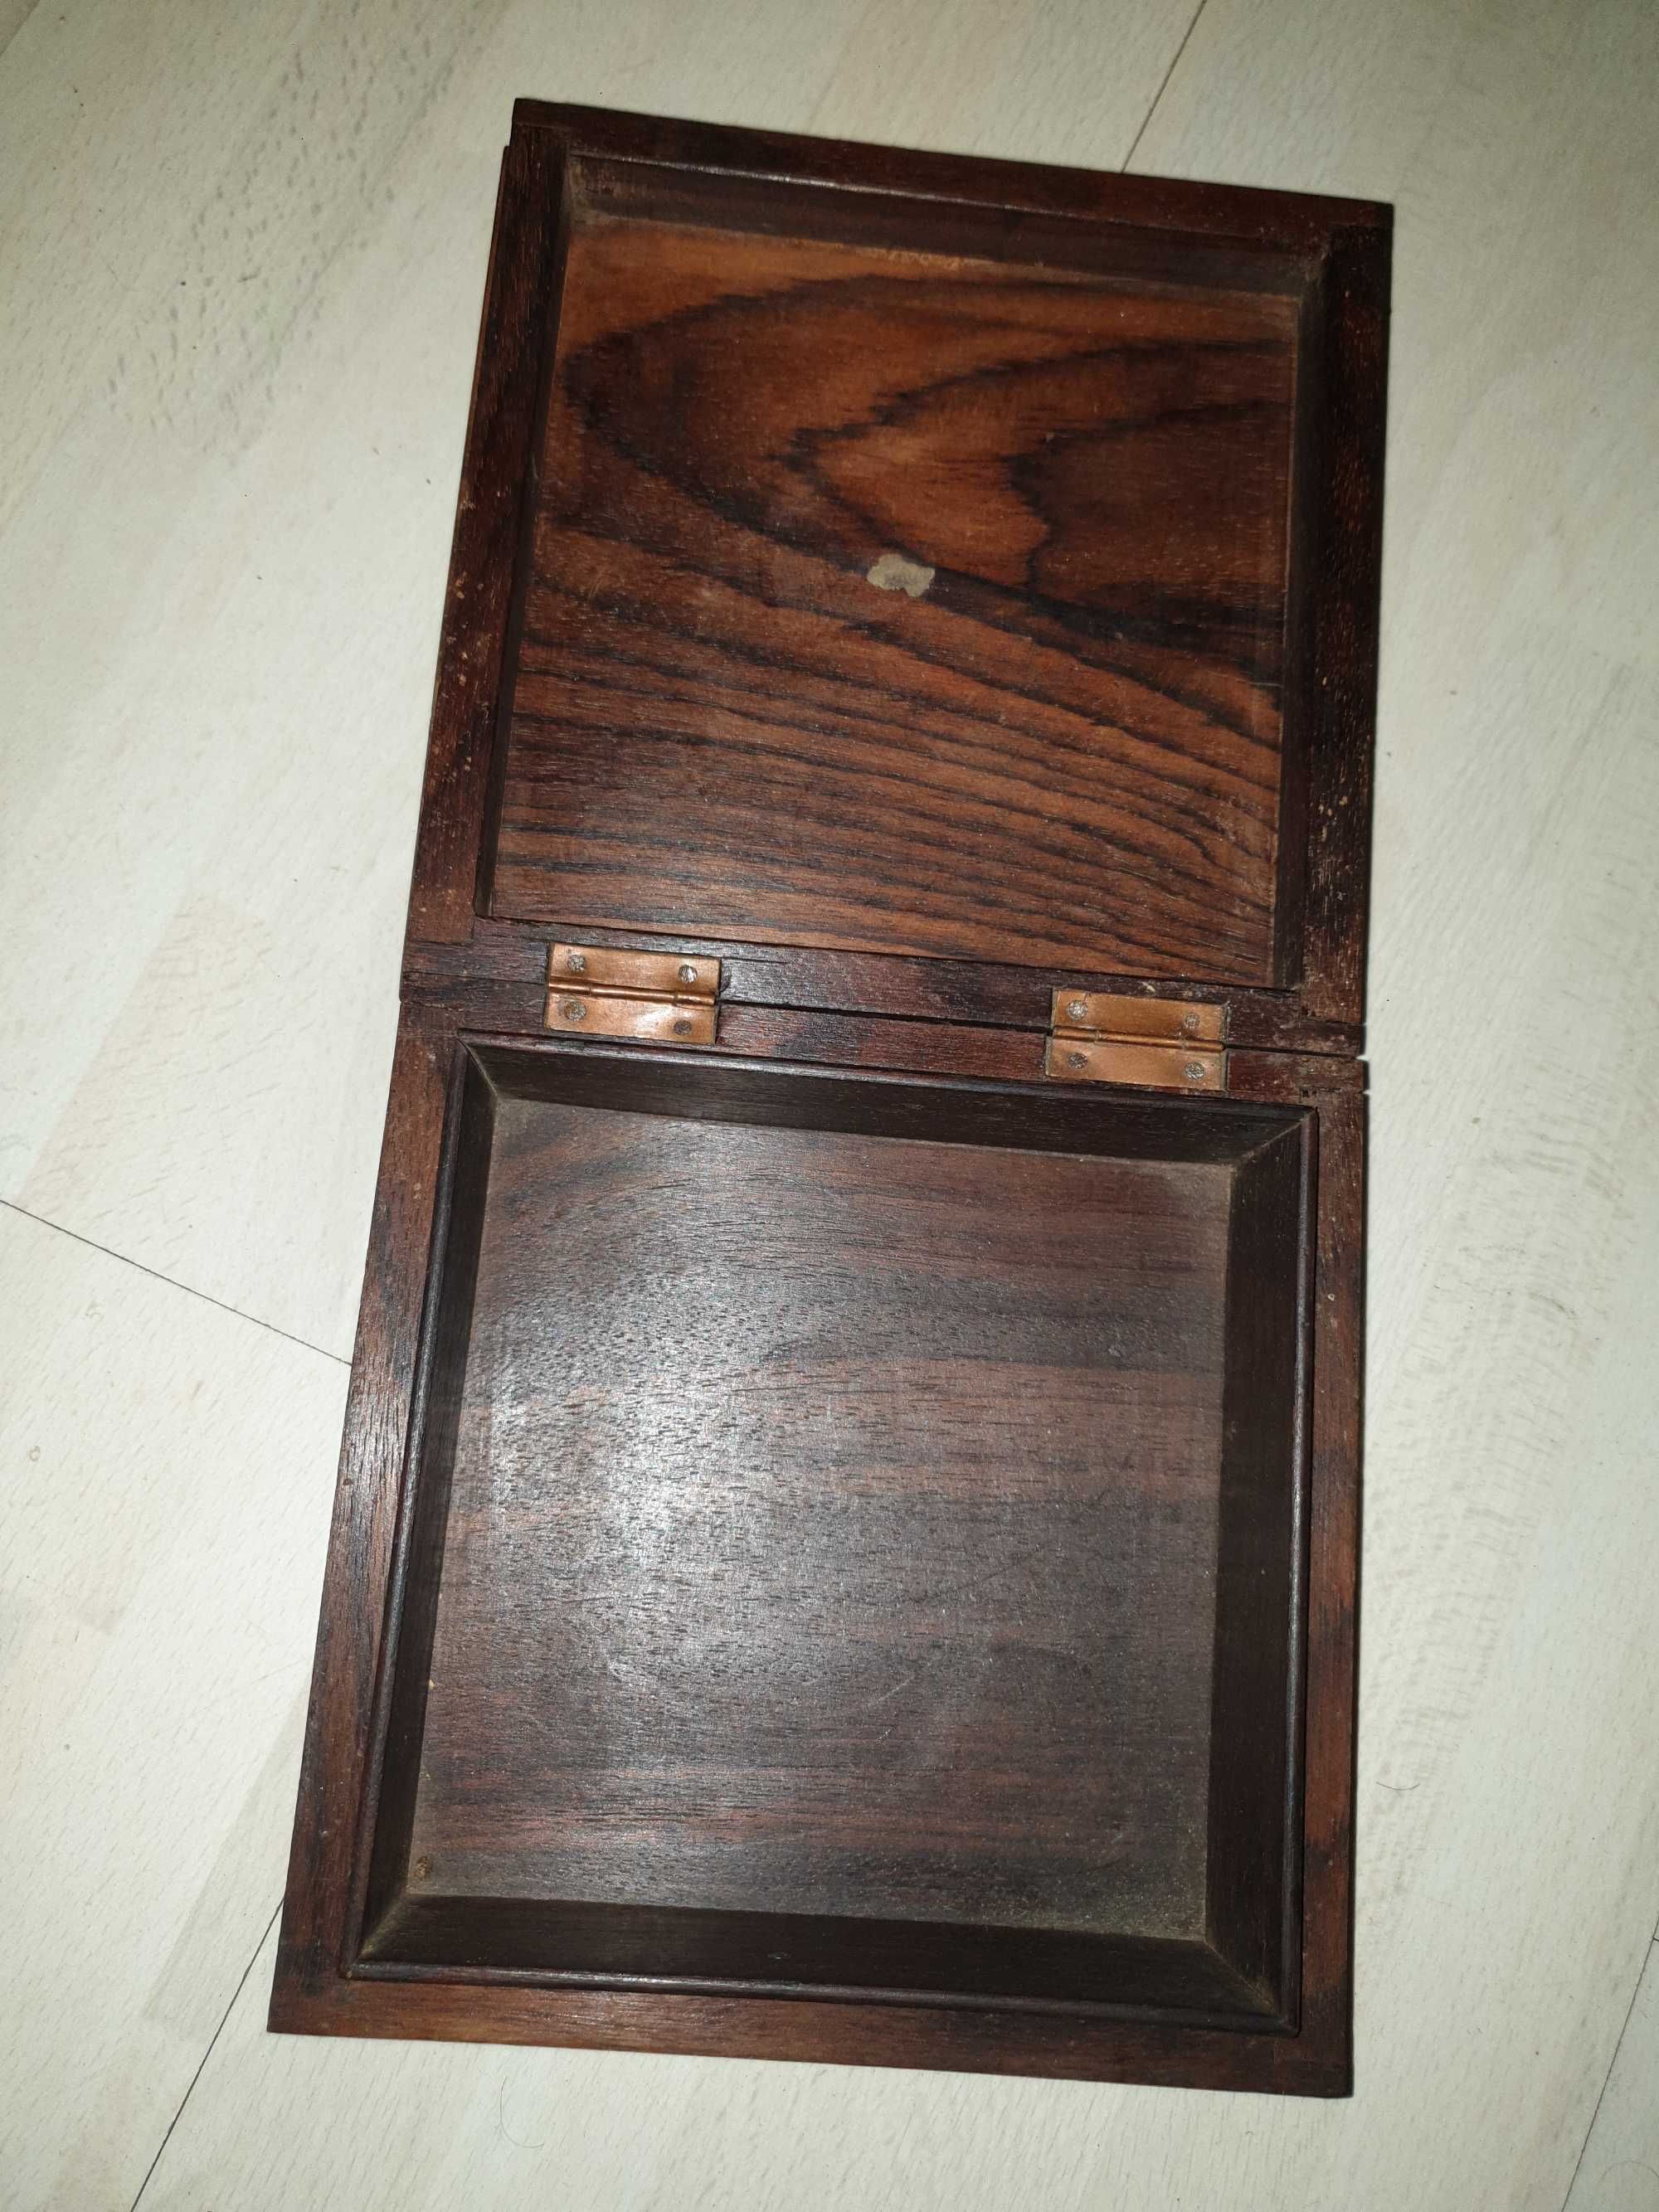 Sprzedam rzeźbione pudełko/ szkatułkę z drewna